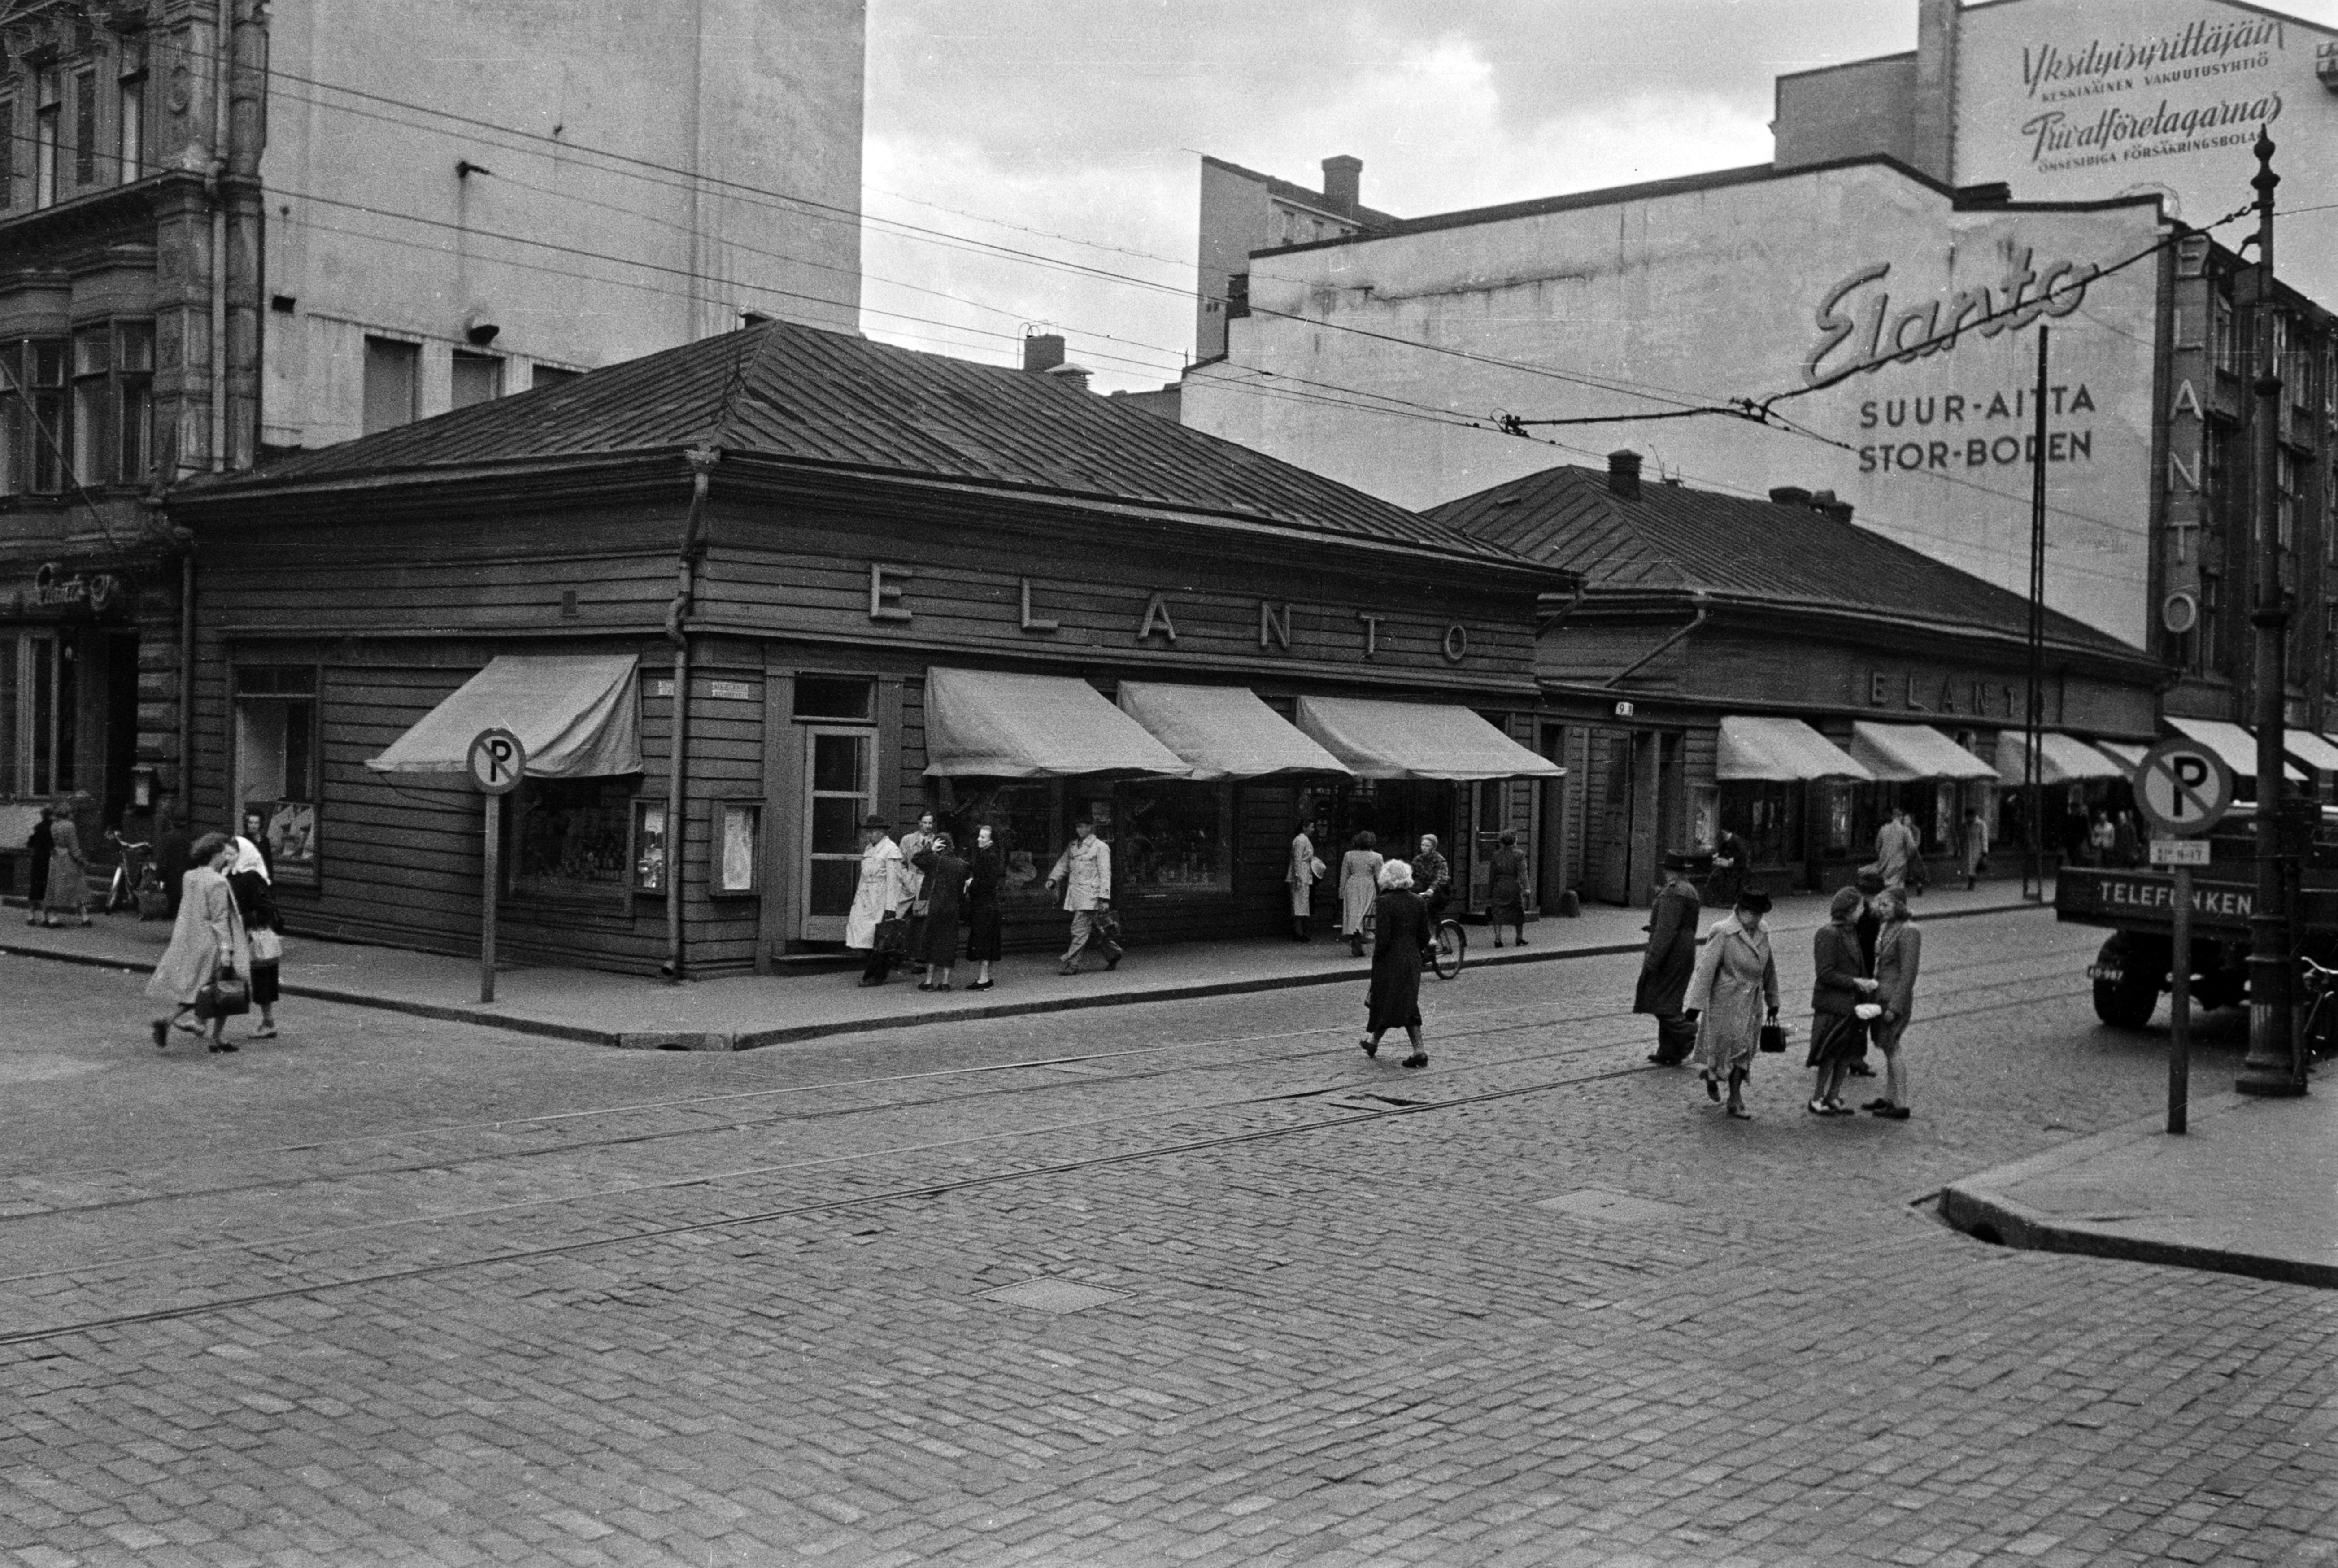 Aleksanterinkatu 9. - Kluuvikatu 5. Elannon myymälä ja Elannon suur-aitta. Puurakennukset purettiin syksyllä 1950 ja paikalle rakennettiin Elannon tavaratalo.